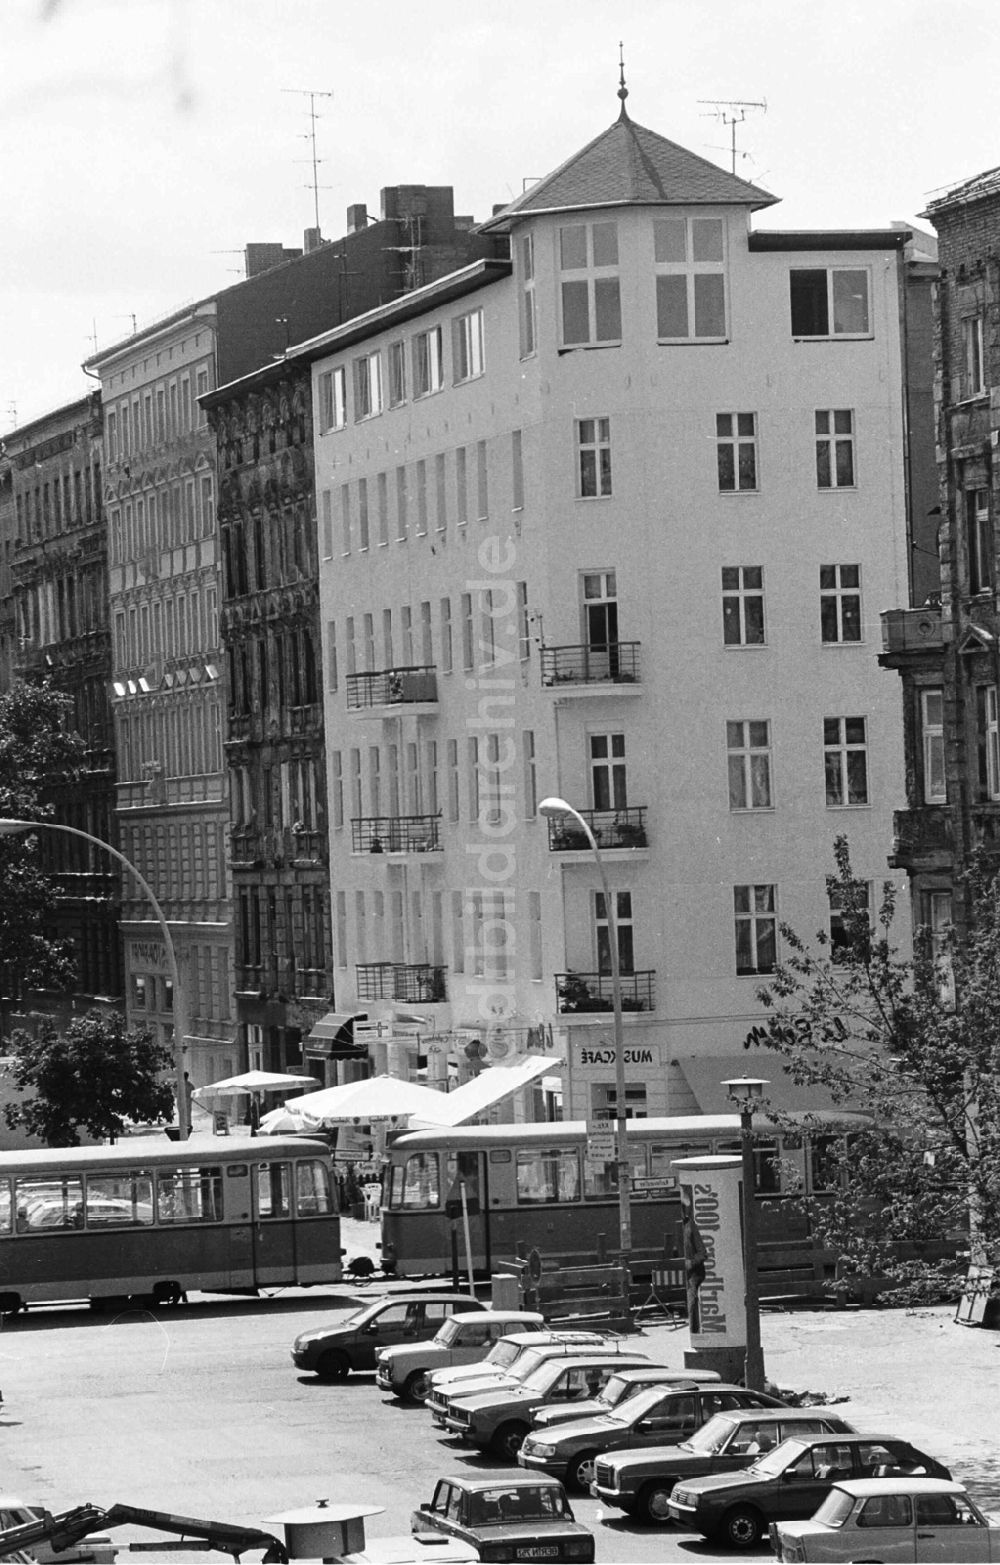 DDR-Bildarchiv: Berlin / Prenzlauer Berg - renovierte Altbauten in Prenzlauer Berg 29.07.92 Lange Umschlag 1083